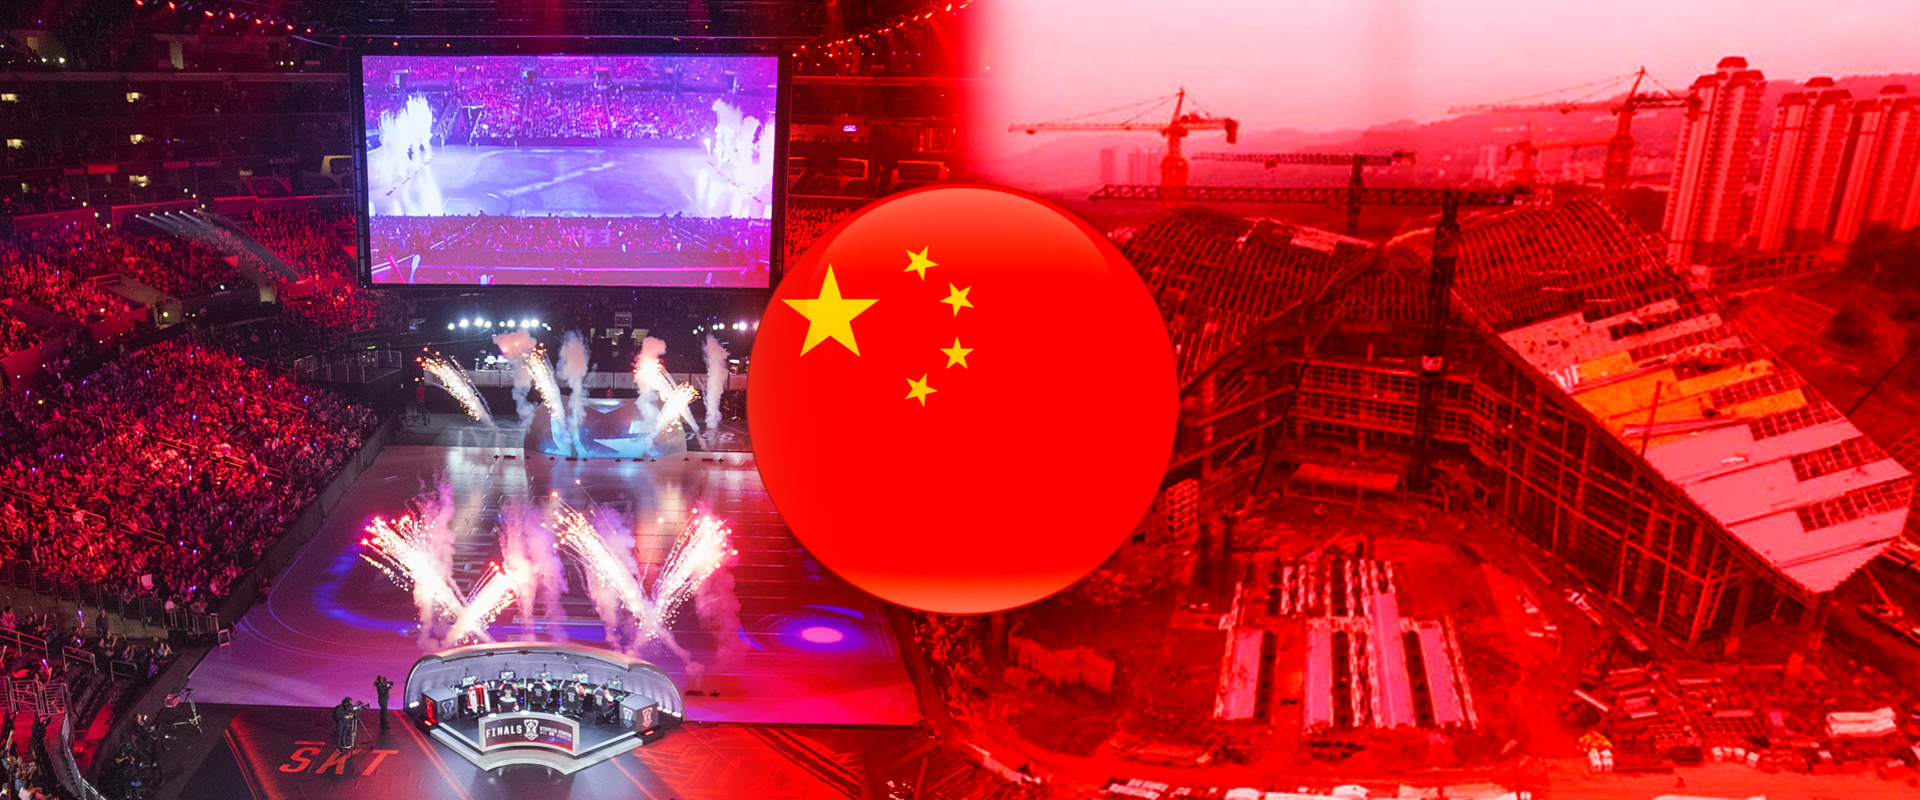 20 ezer fős stadiont kapnak az e-sport szerelmesei Kínában